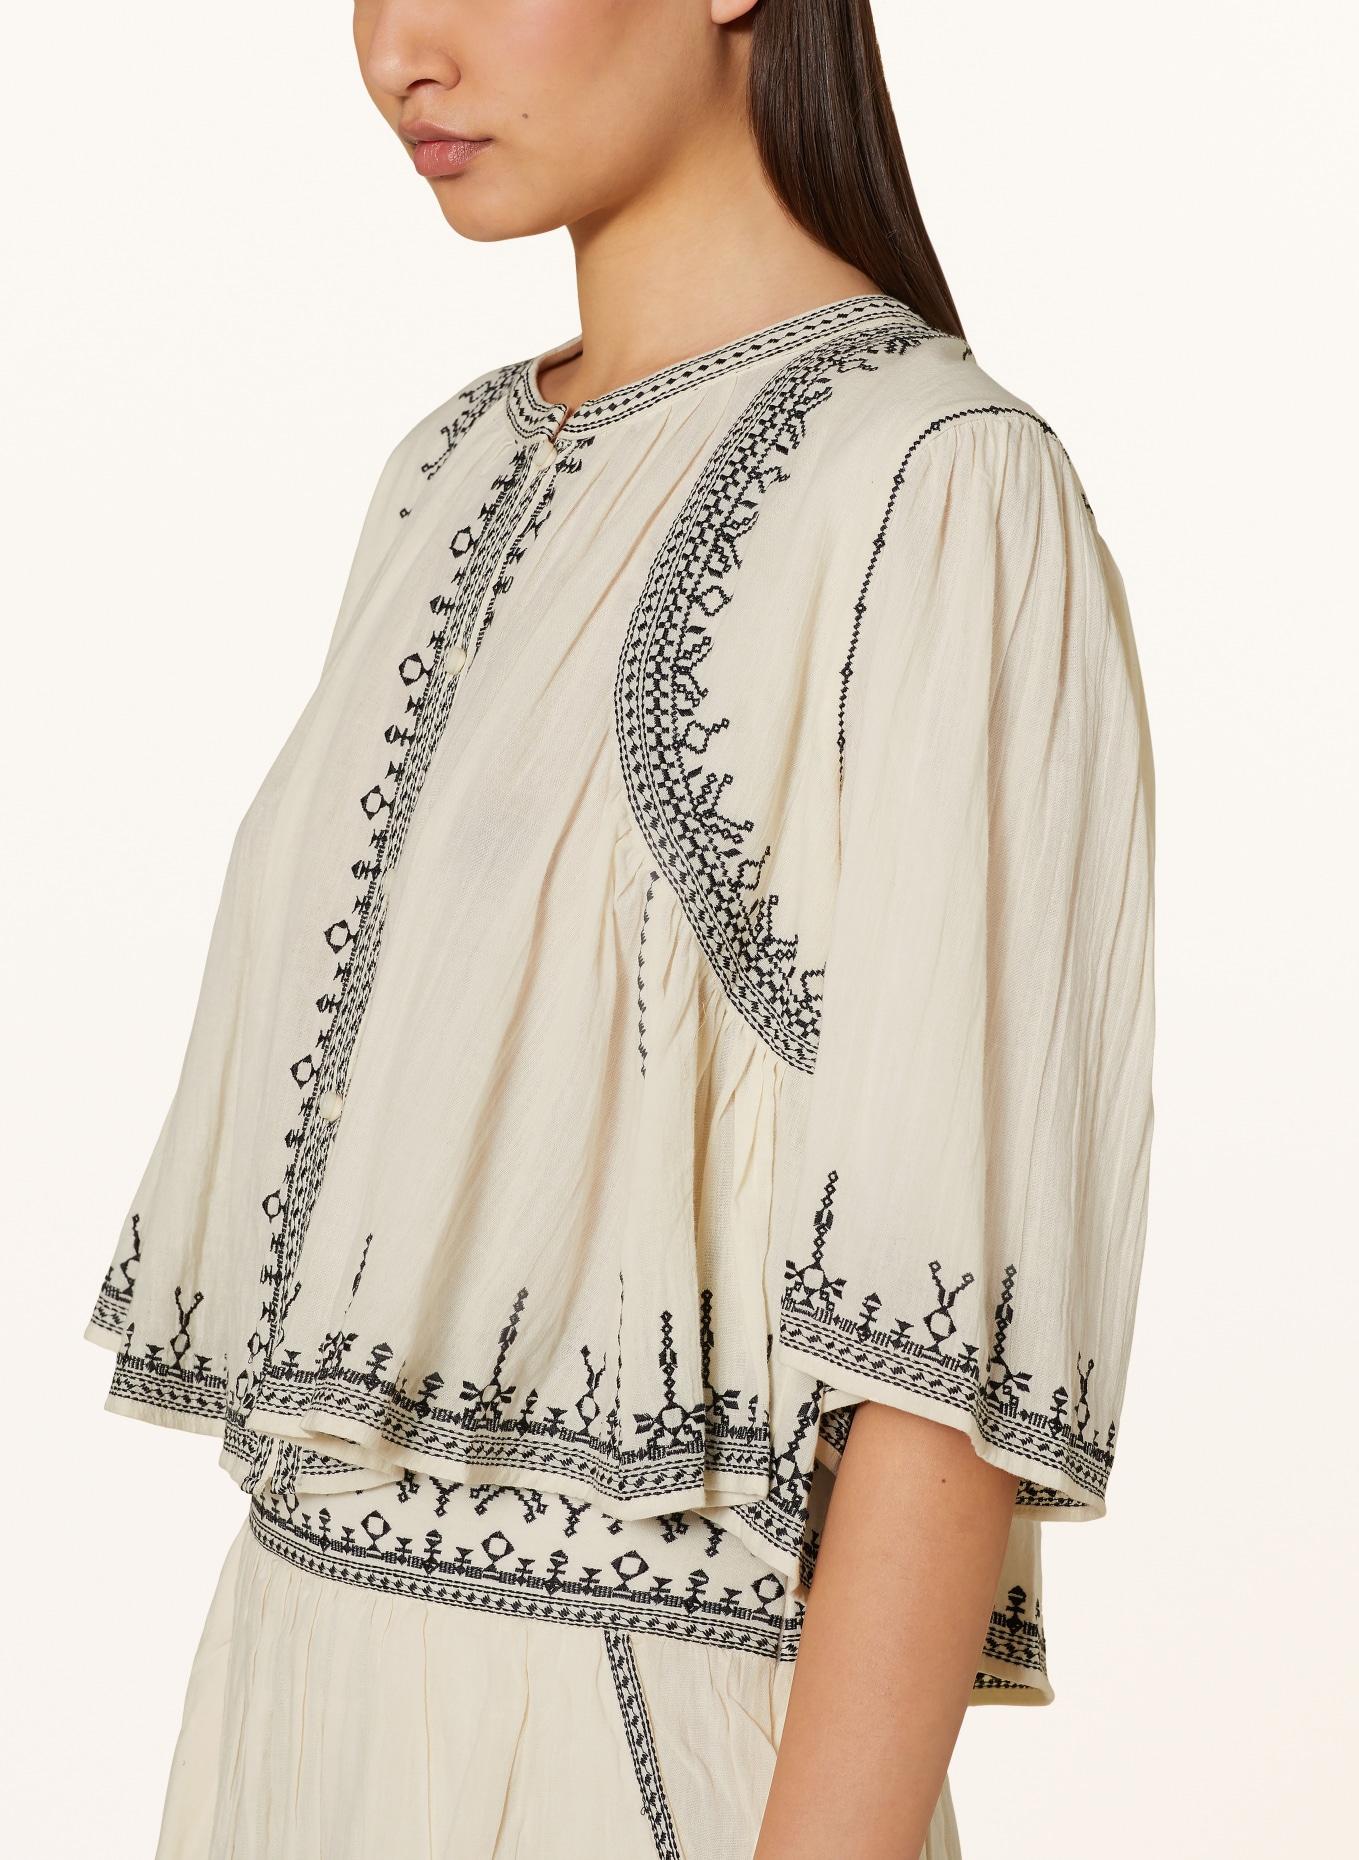 MARANT ÉTOILE Cropped blouse PERKINS, Color: ECRU/ BLACK (Image 4)